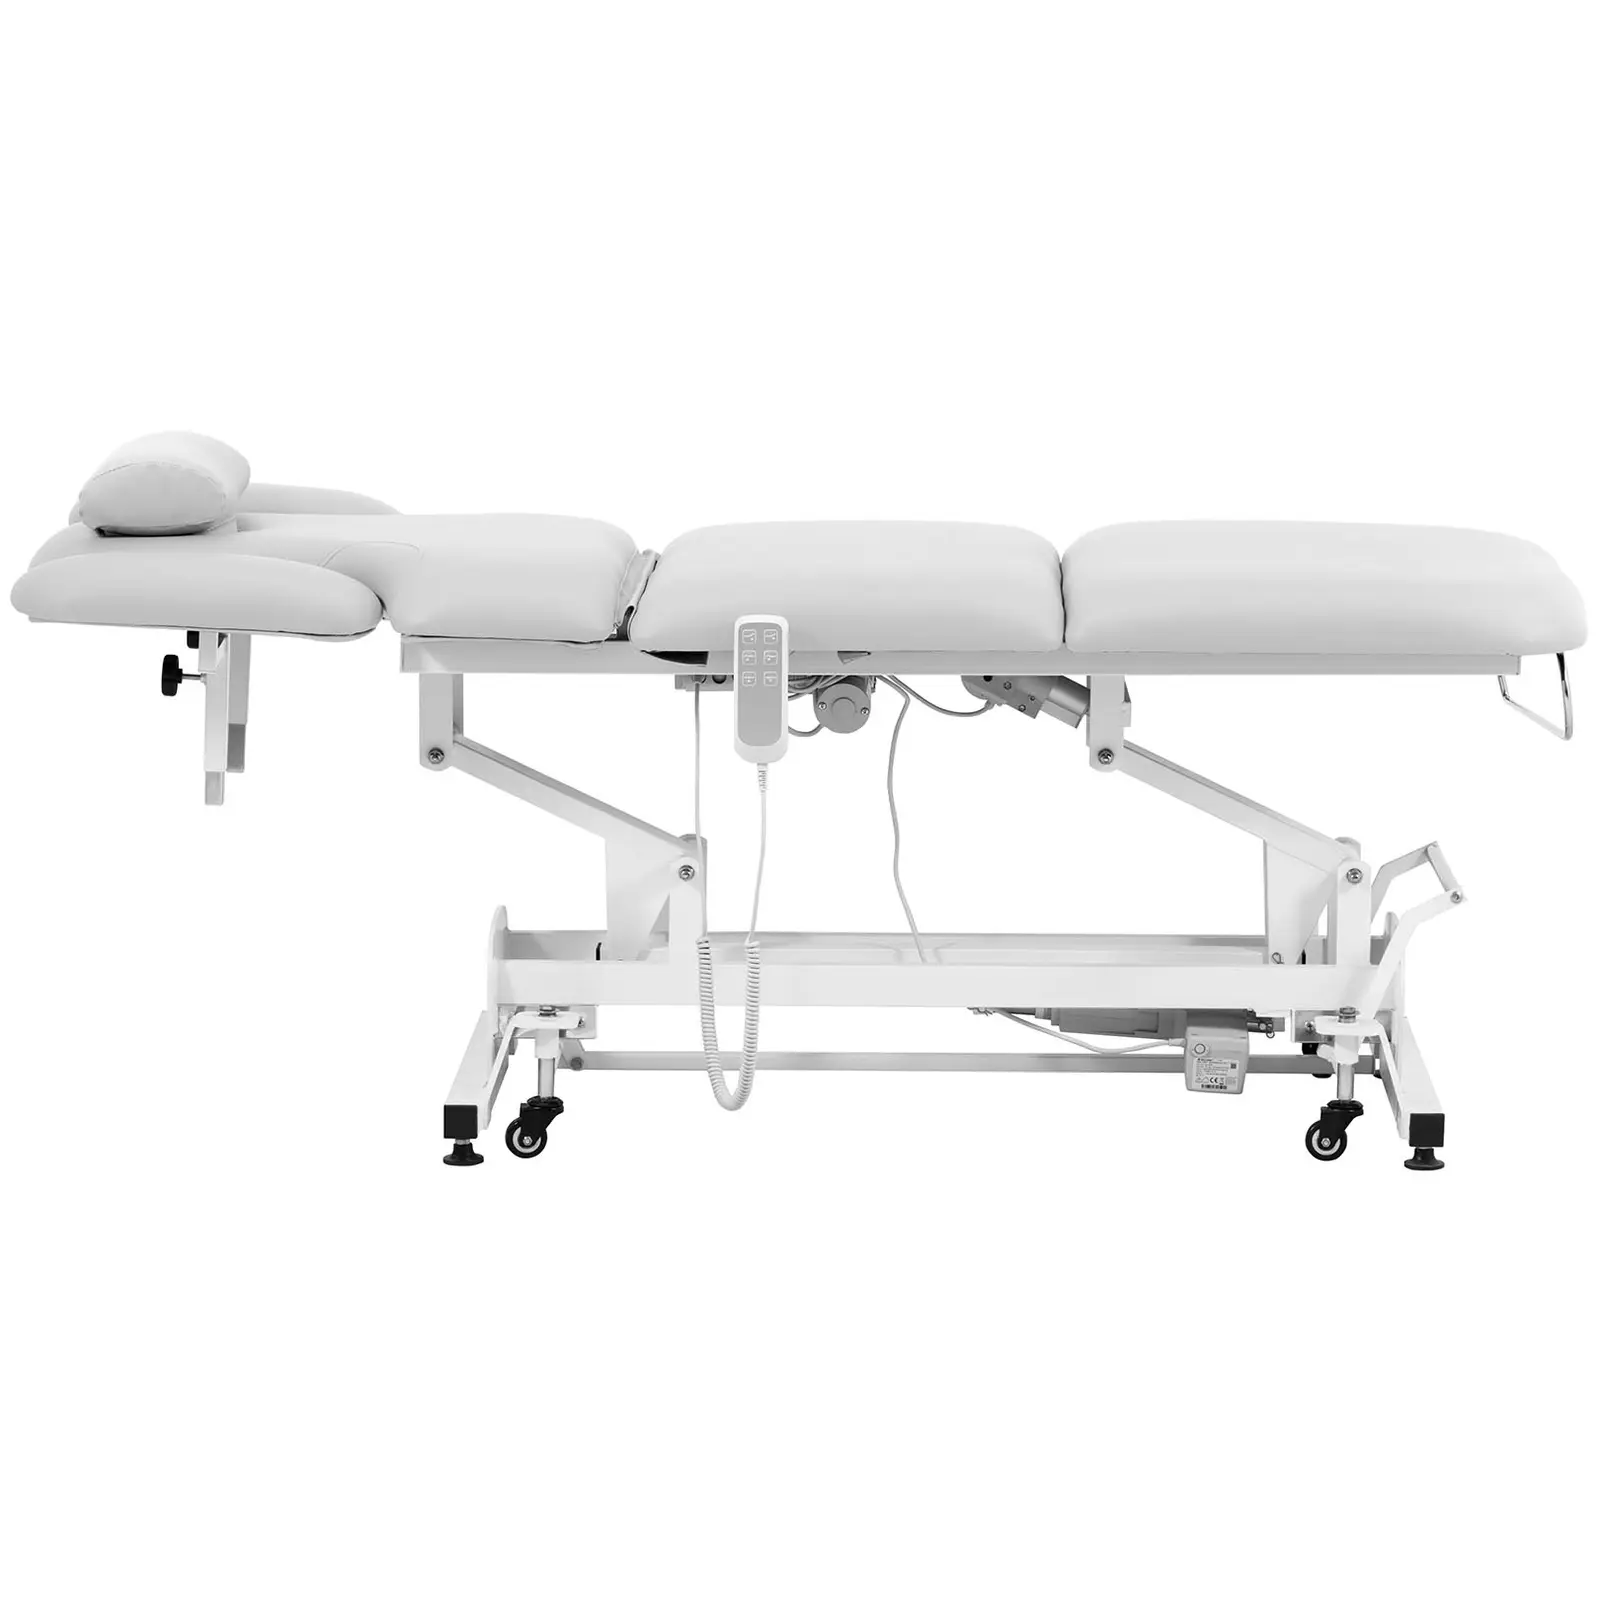 Lettino massaggio elettrico - 3 motori - 250 kg - bianco